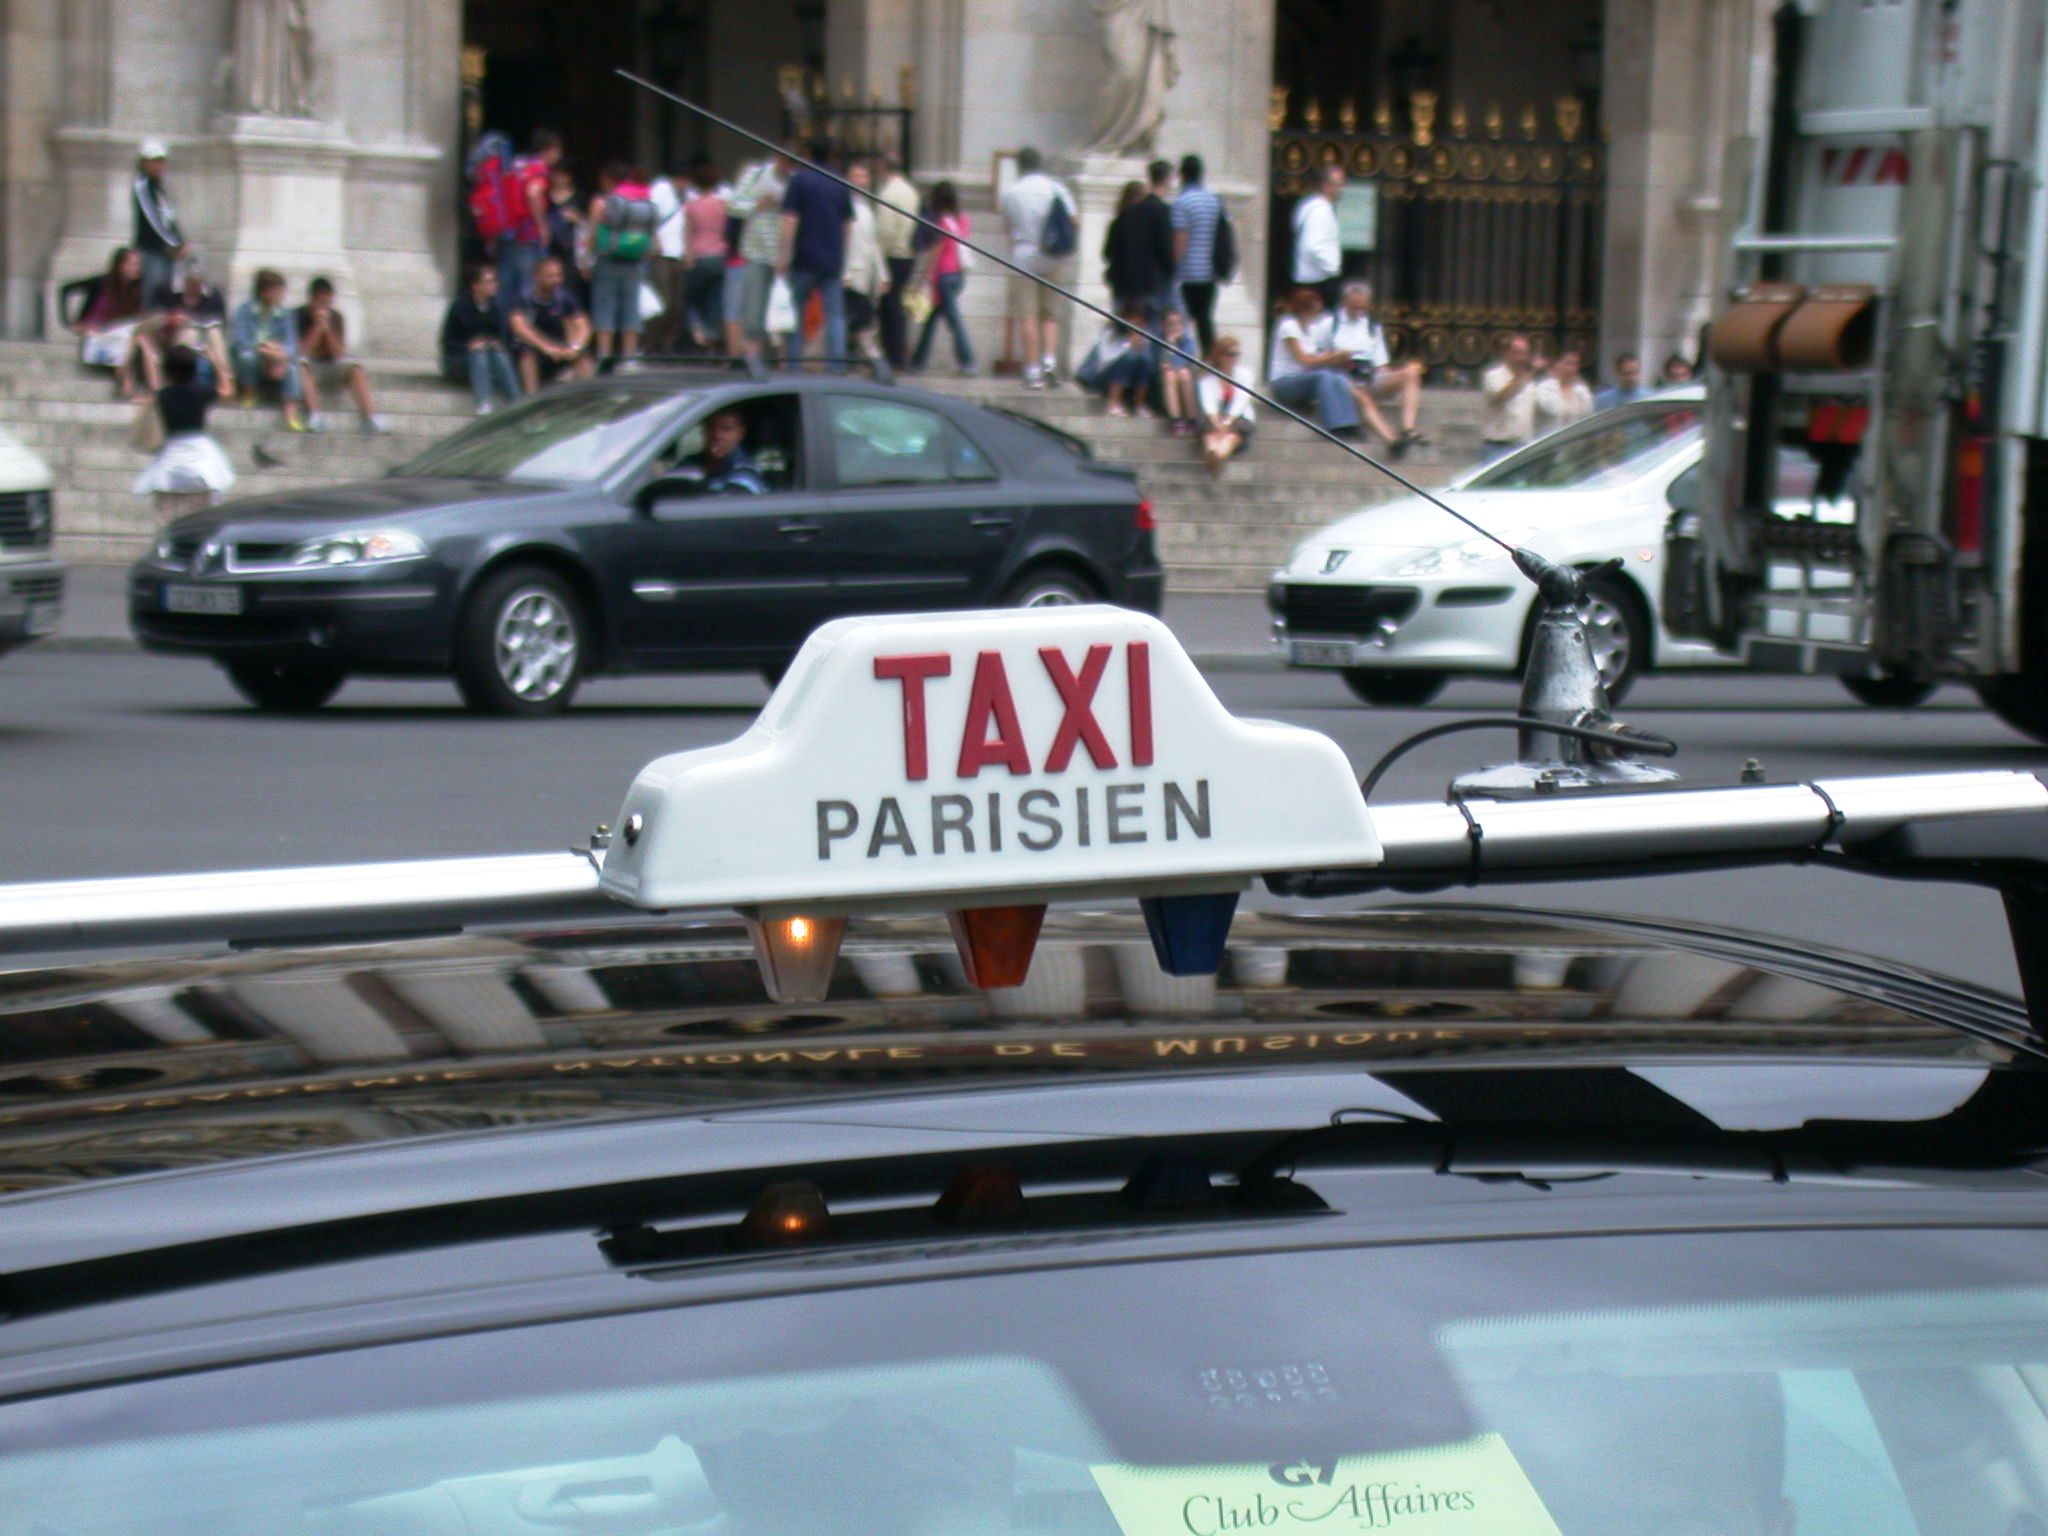 Taxi Paris Wikimedia